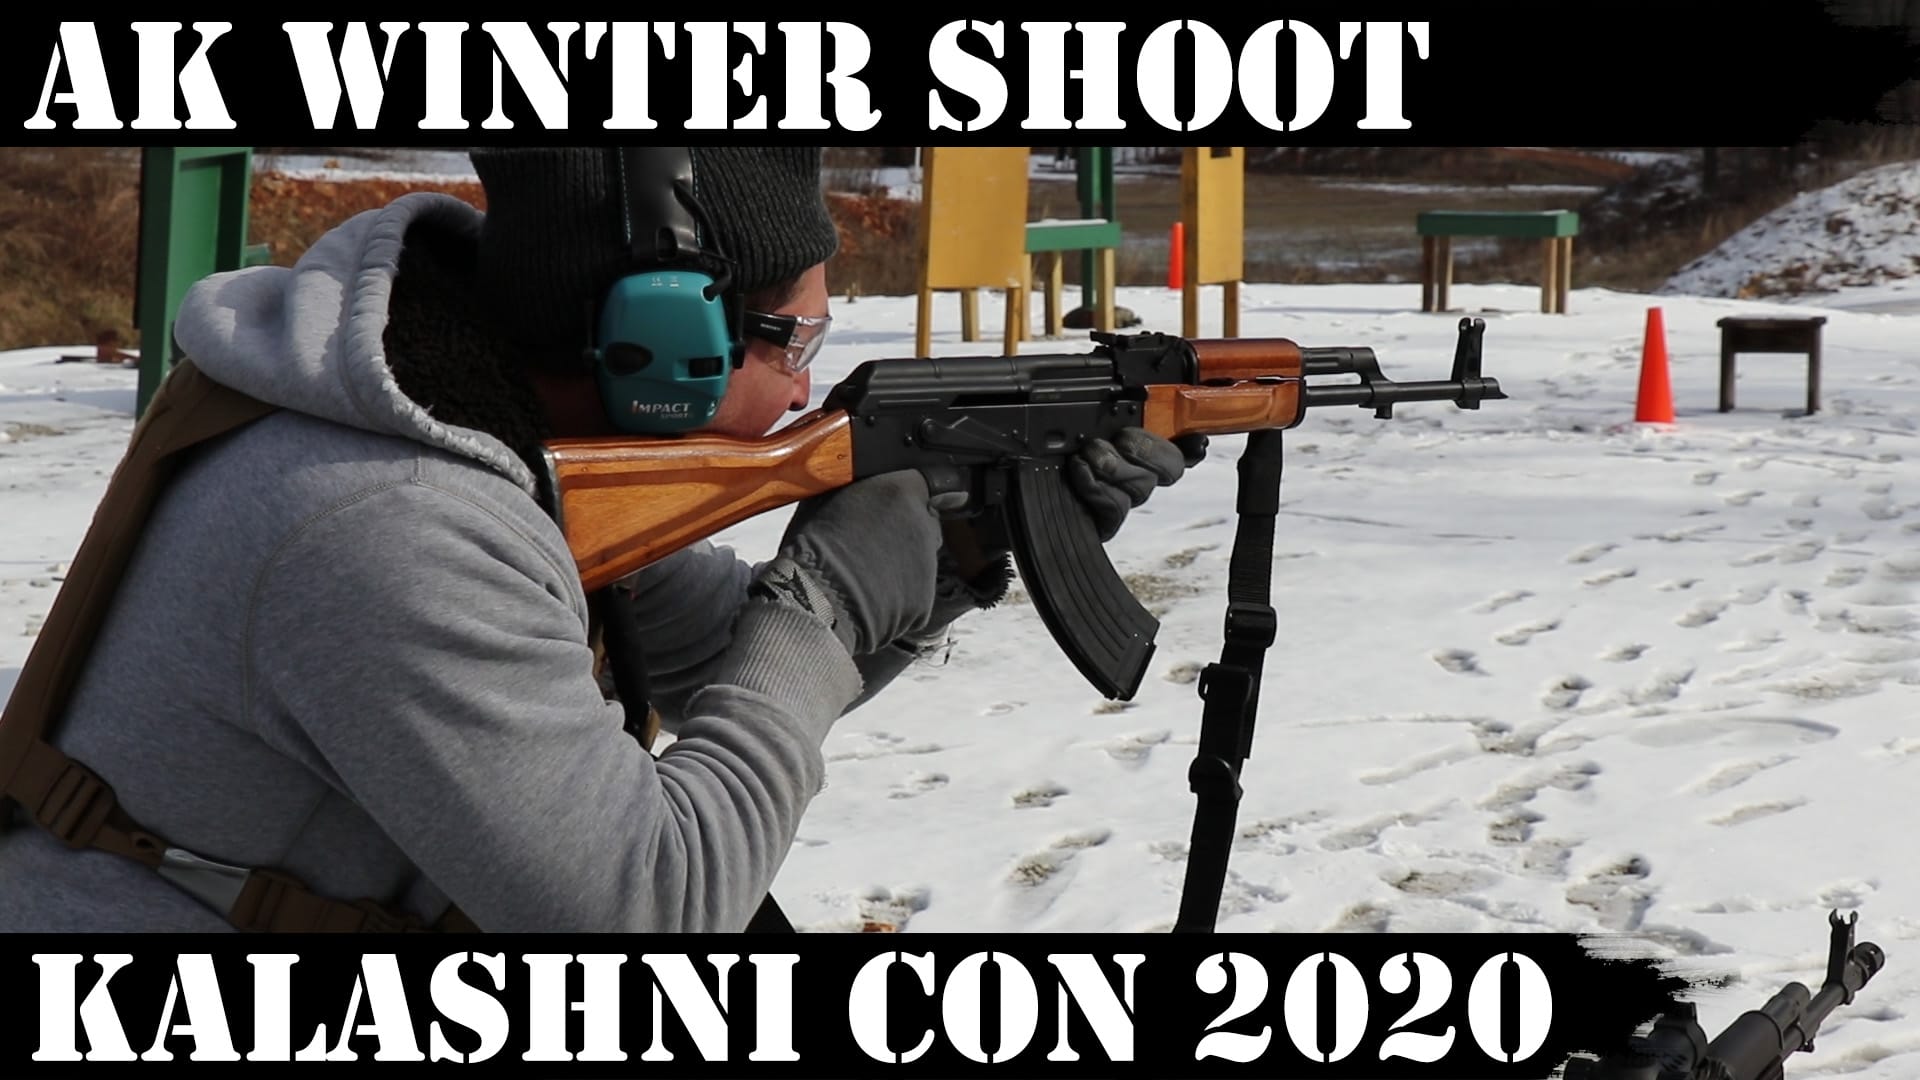 AK Winter Shoot – Kalashni Con 2020!